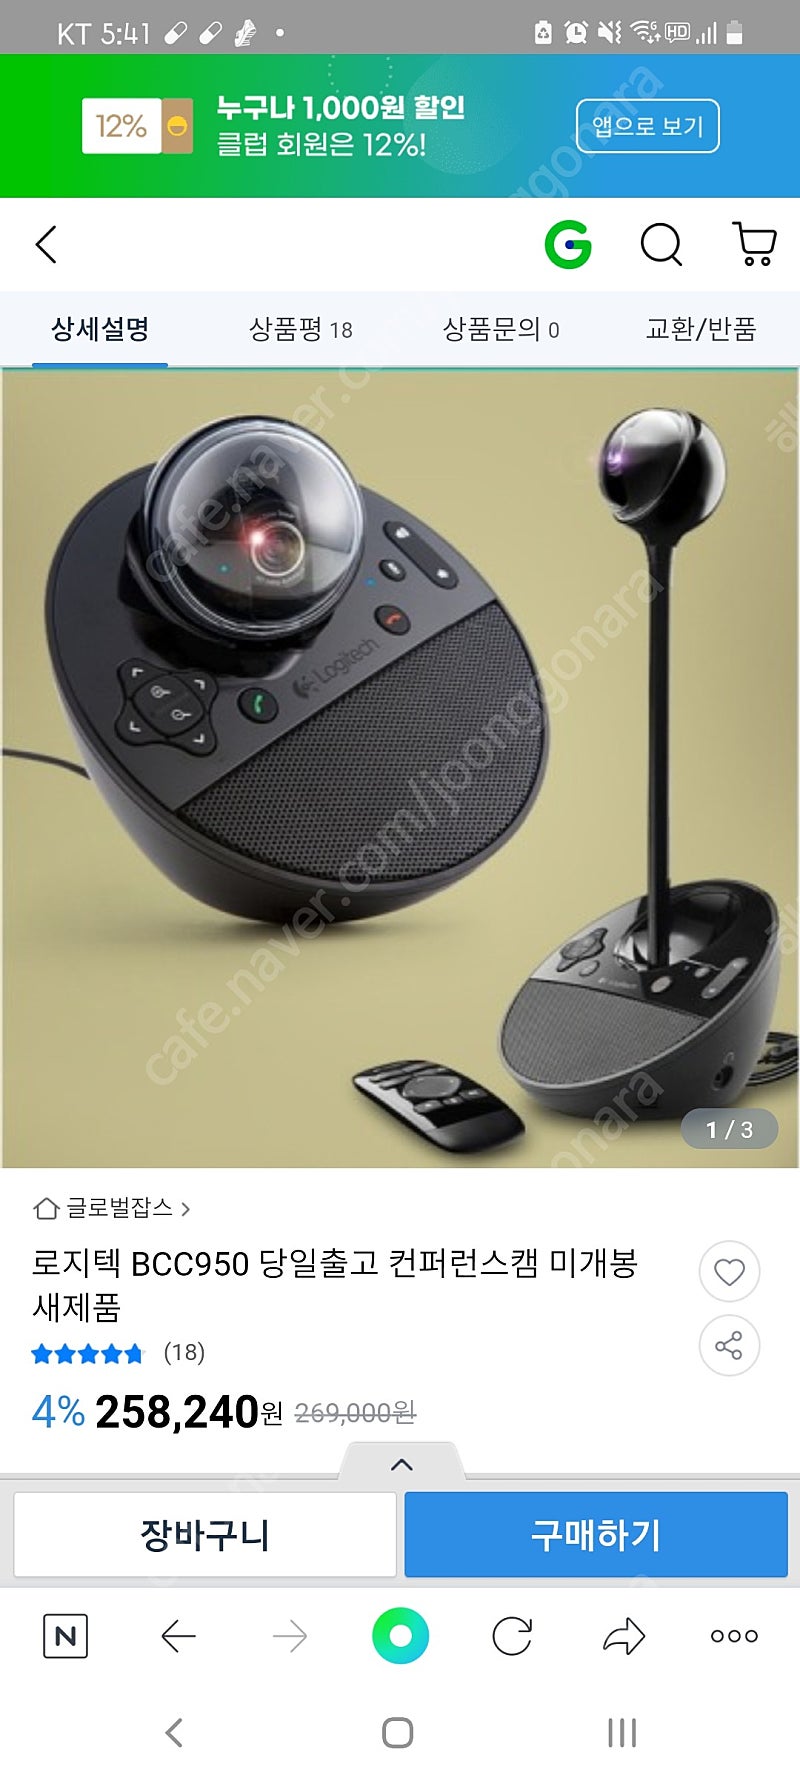 로지텍 BCC950 컨퍼런스캠 새제품